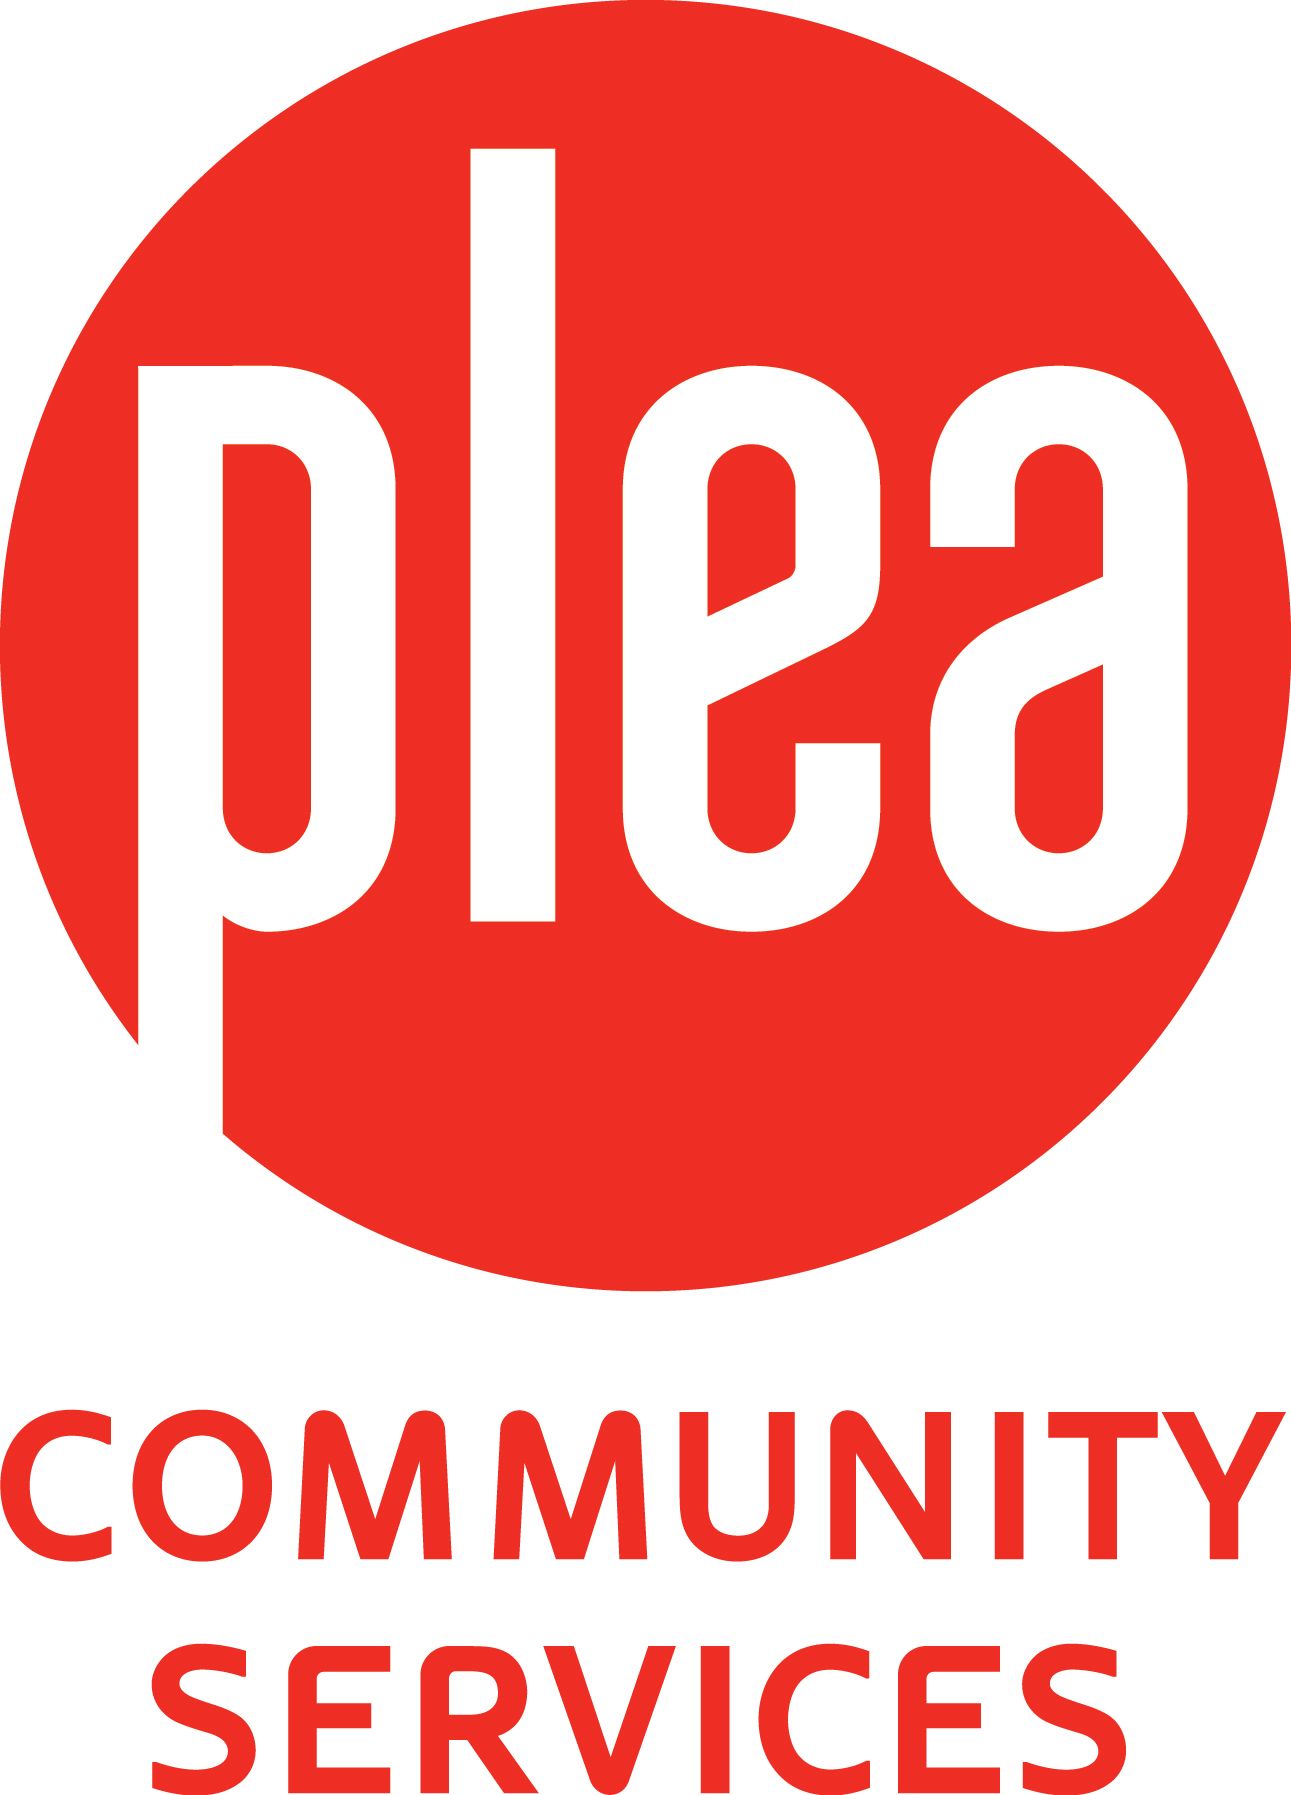 PLEA Community Services Society of BC Logo